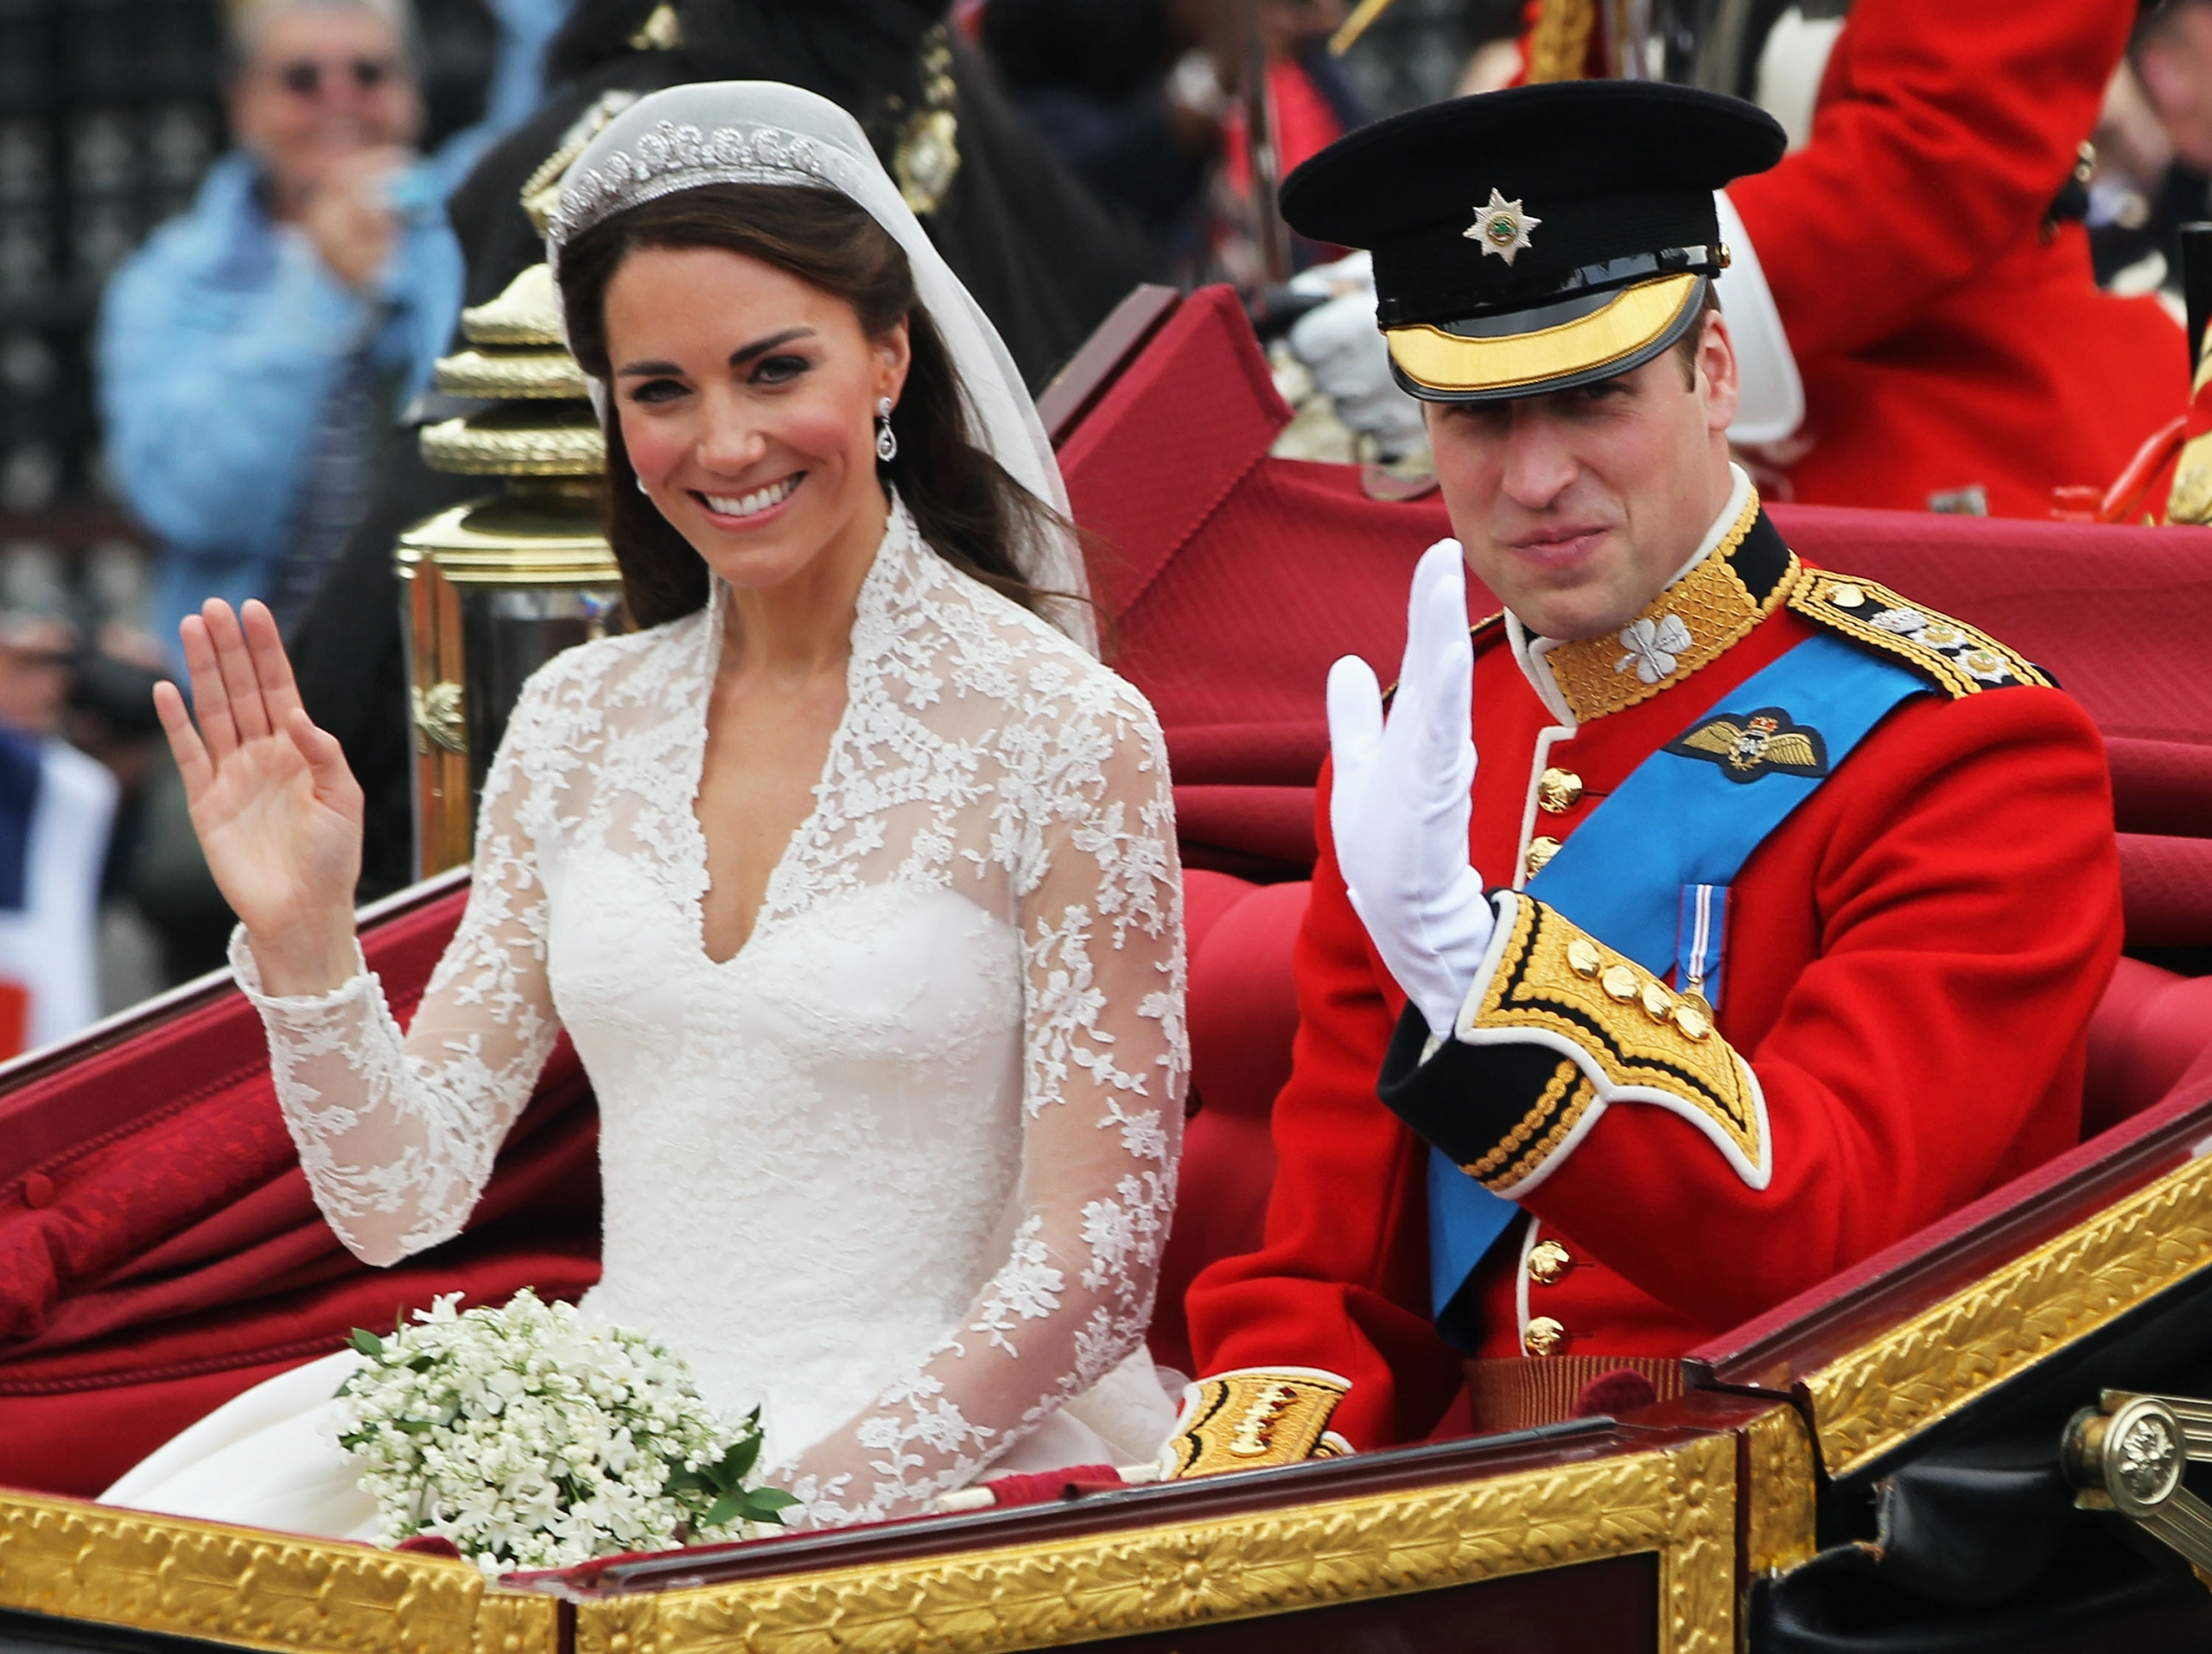 Suknia księżnej Kate zawierała tajną wiadomość? Zdradzał ją jeden detal